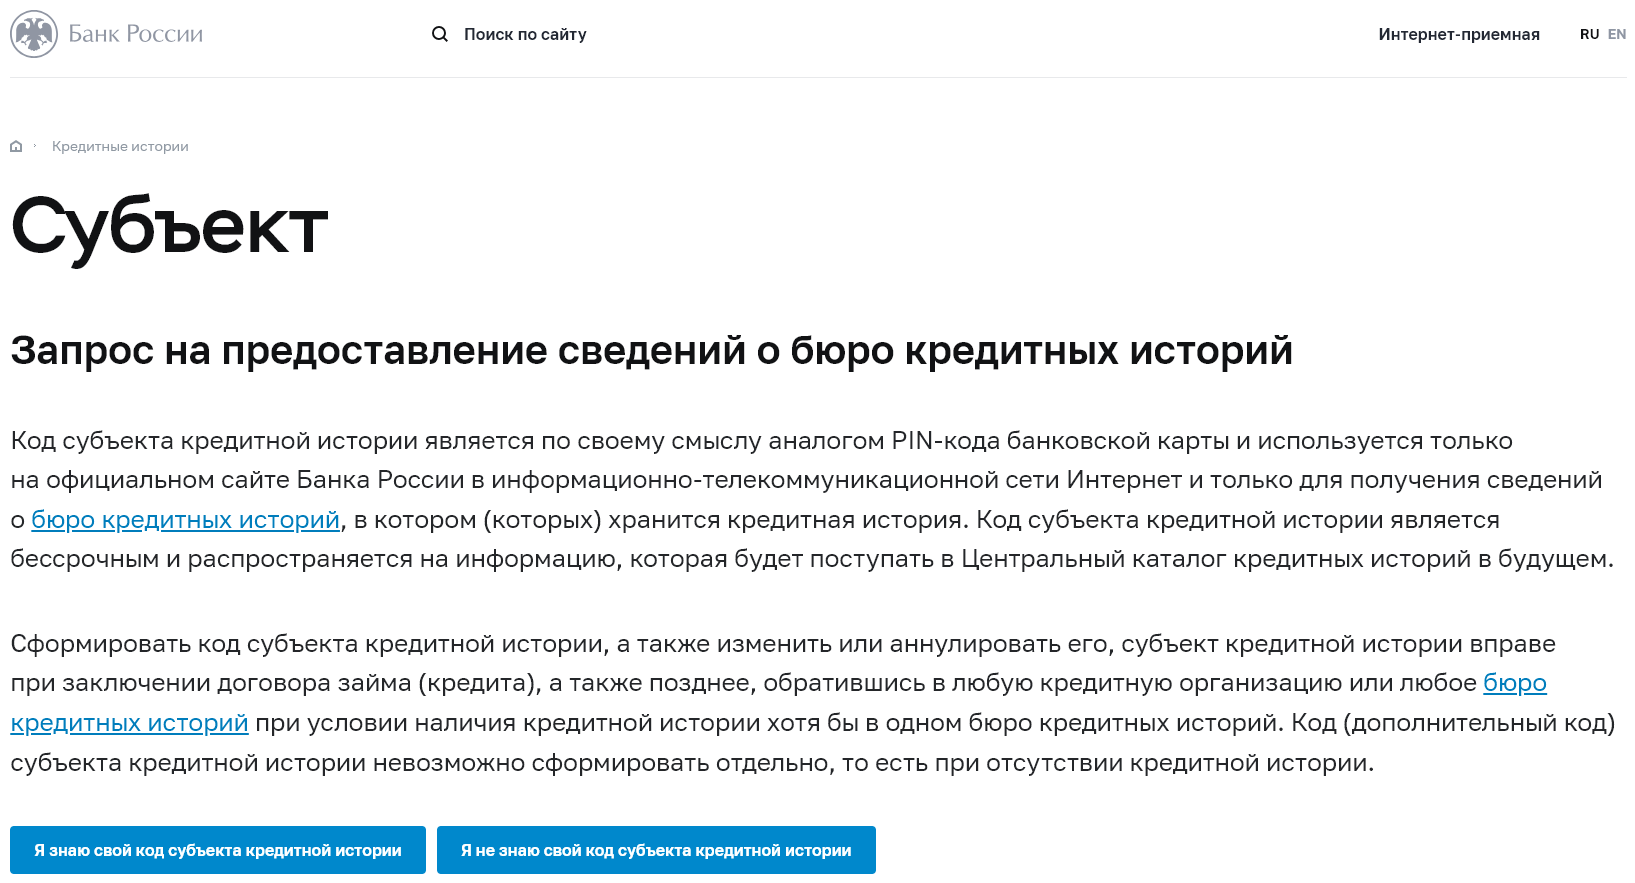 Запрос в ЦККИ сведений о кредитной истории на сайте Банка России